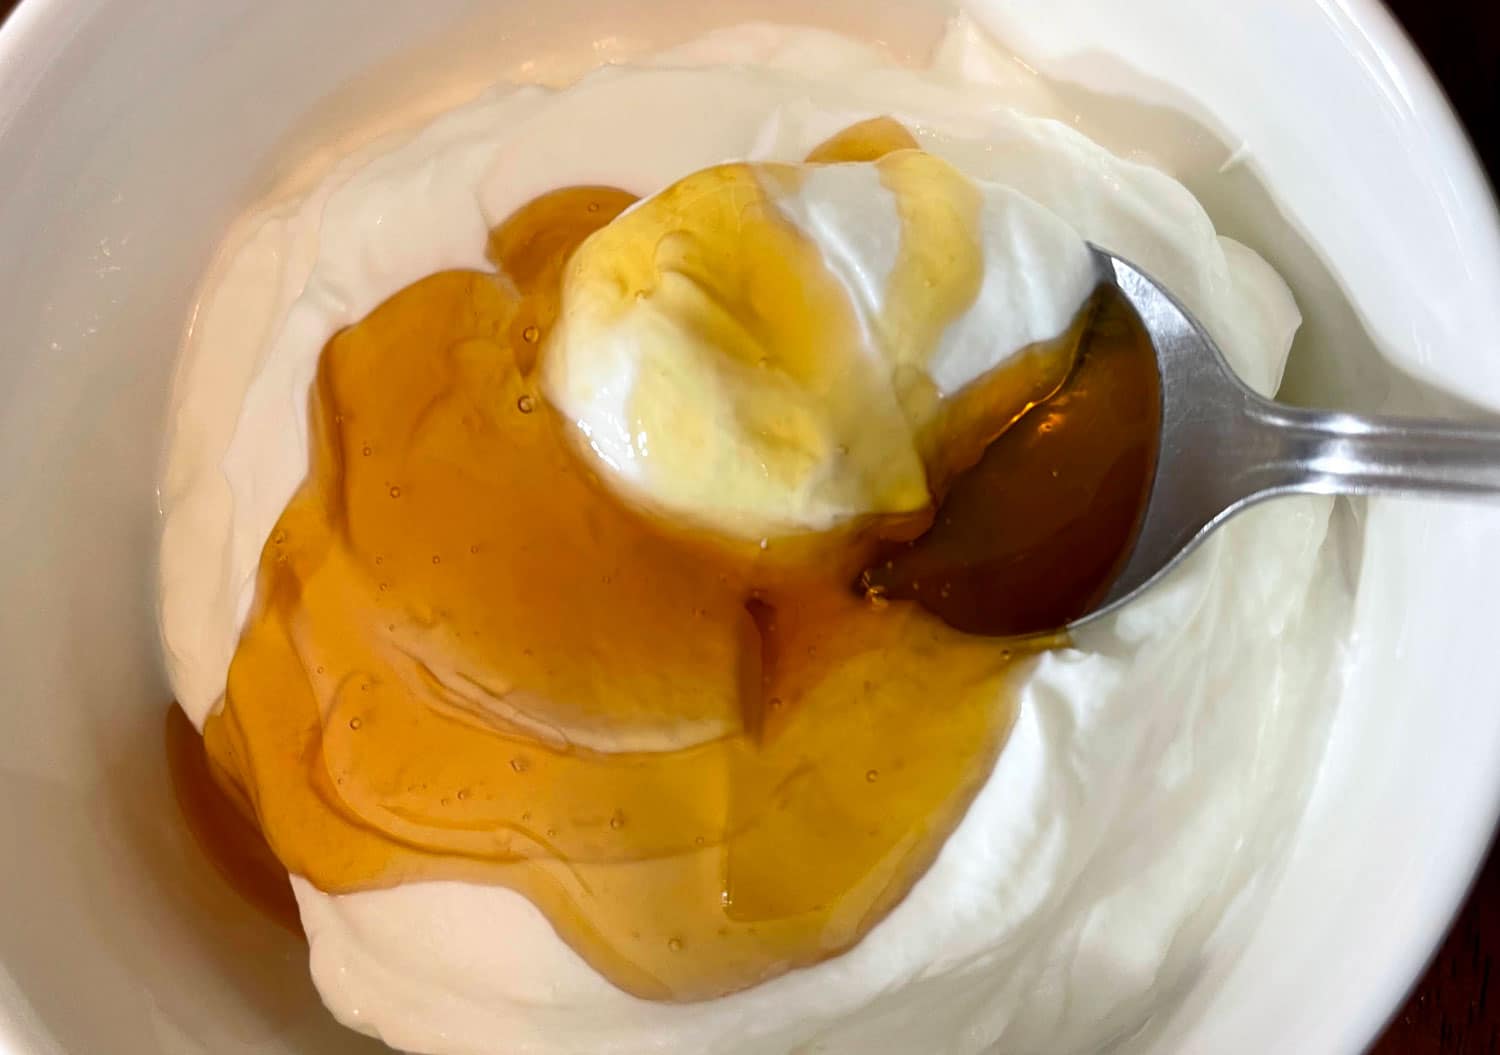 Honey Vanilla Greek Yogurt - Flavored, Sweetened Creamy Greek Yogurt